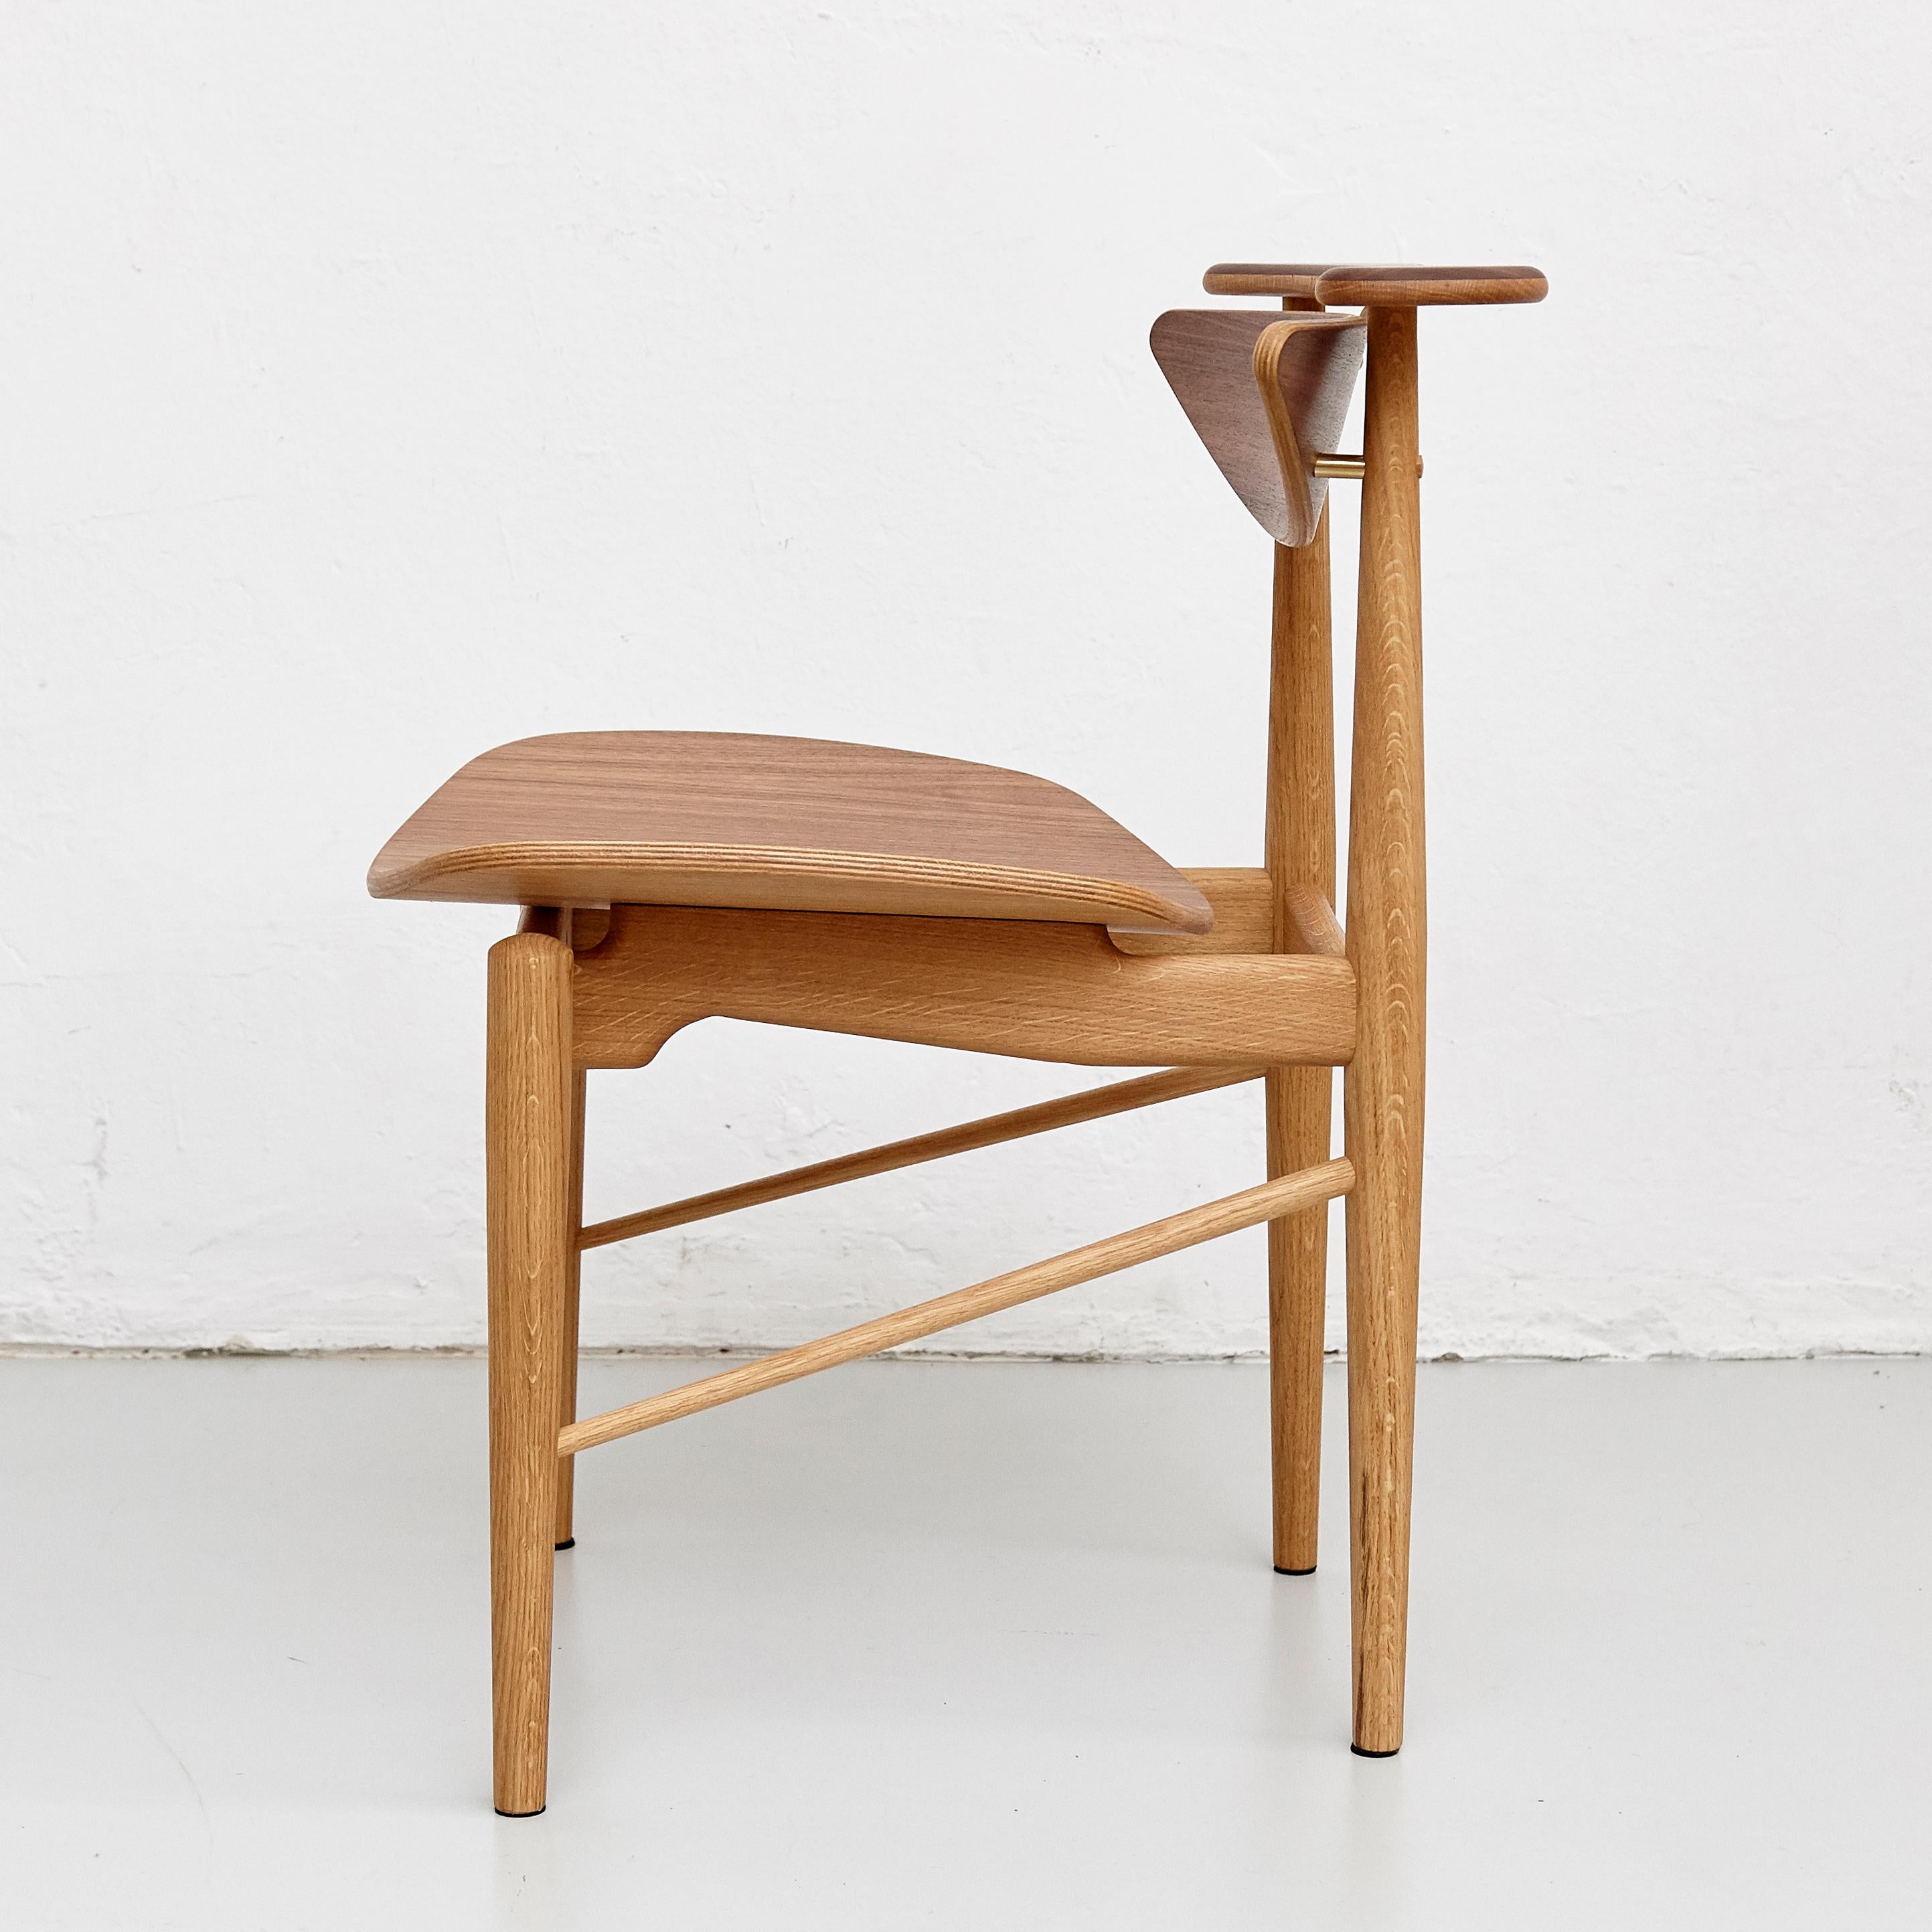 1953 von Finn Juhl entworfener Stuhl, der 2015 neu aufgelegt wurde.
Hergestellt von House of Finn Juhls in Dänemark.

Der Reading-Stuhl ist eines von Finn Juhls schlichteren, aber eleganten Stücken. Der Stuhl zeichnet sich durch aufwändige Details